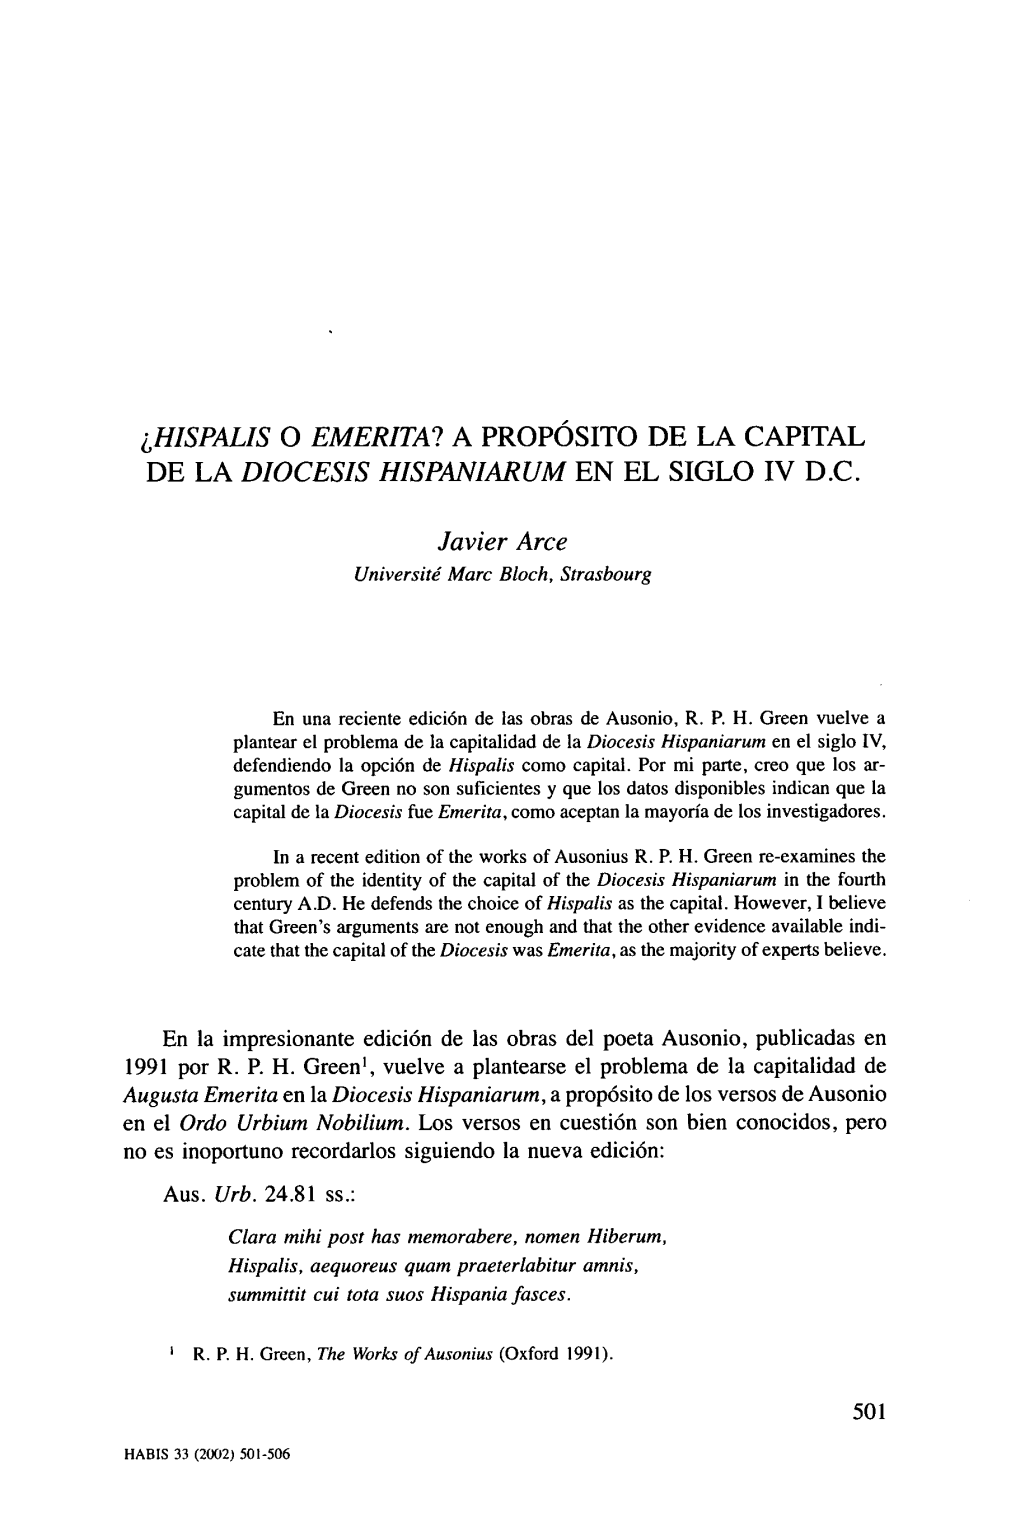 ¿Hispalis O Emerita? a Propósito De La Capital De La Diocesis Hispaniarum En El Siglo Iv D.C